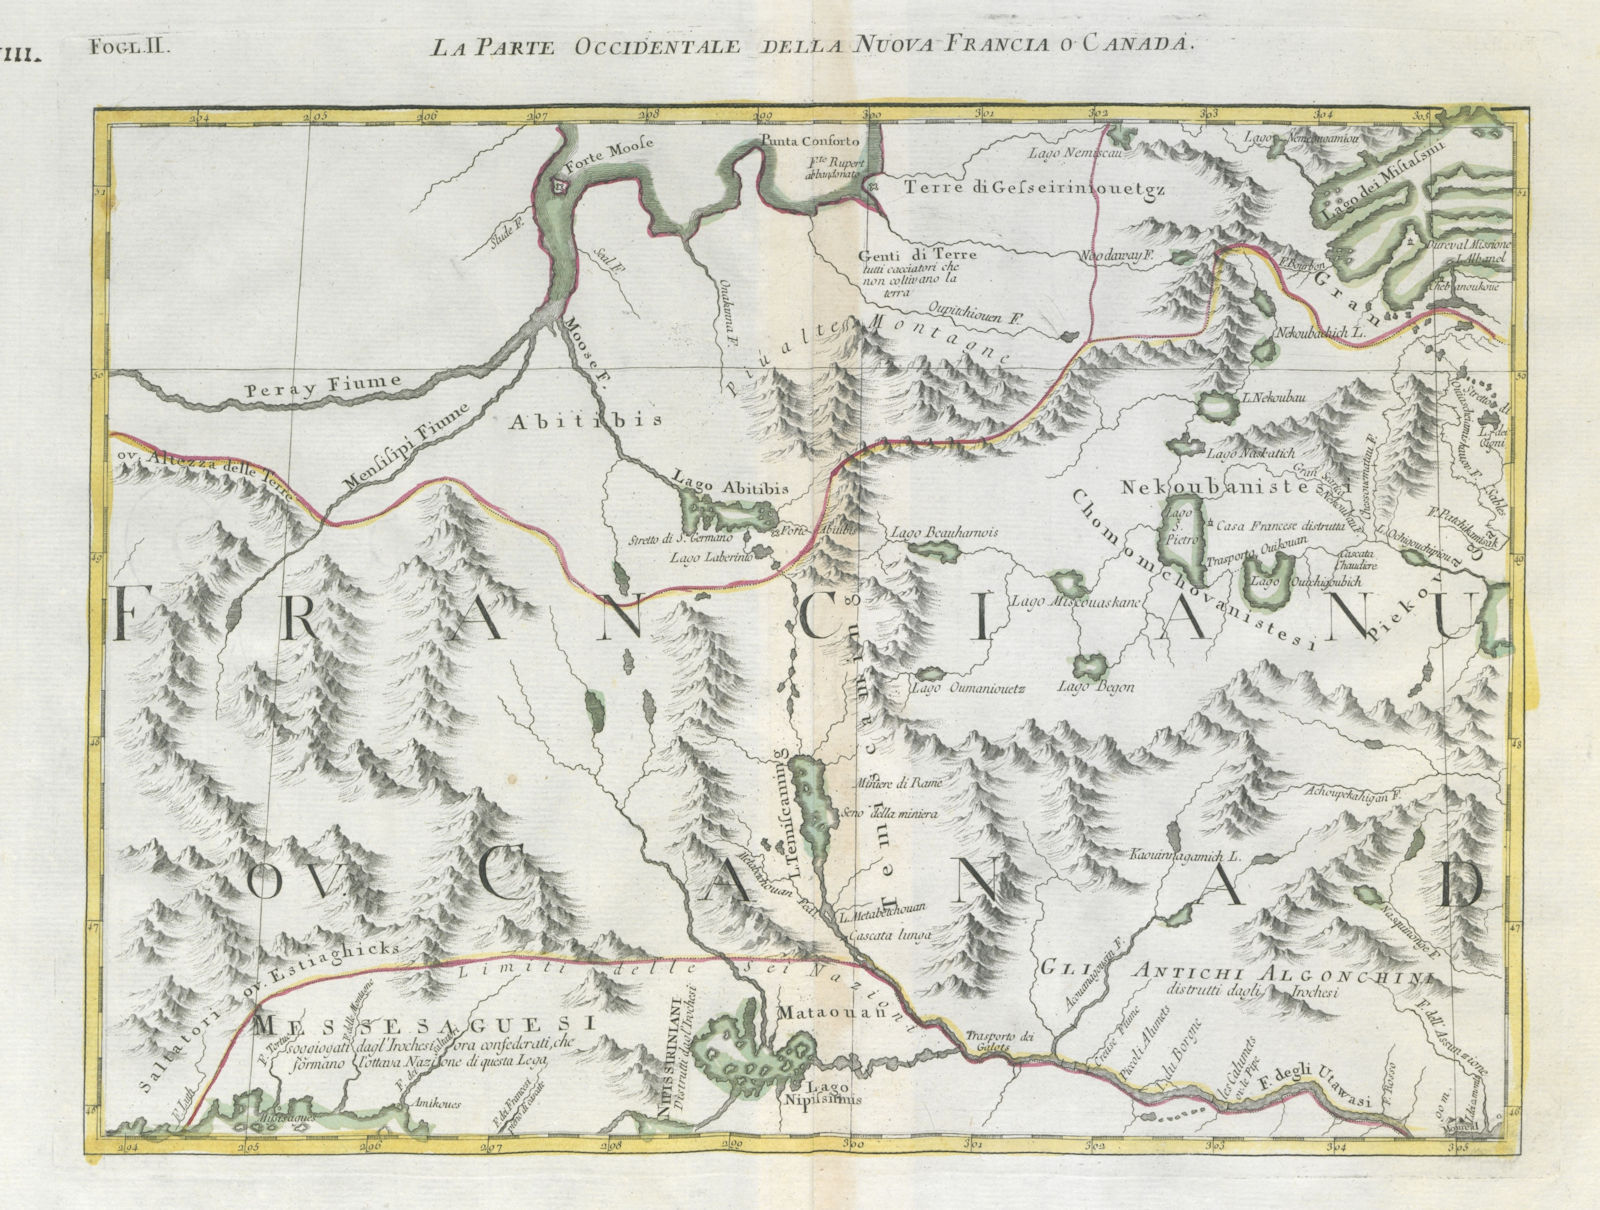 "La parte Occidentale della Nuova Francia o Canada". QC Ontario. ZATTA 1779 map